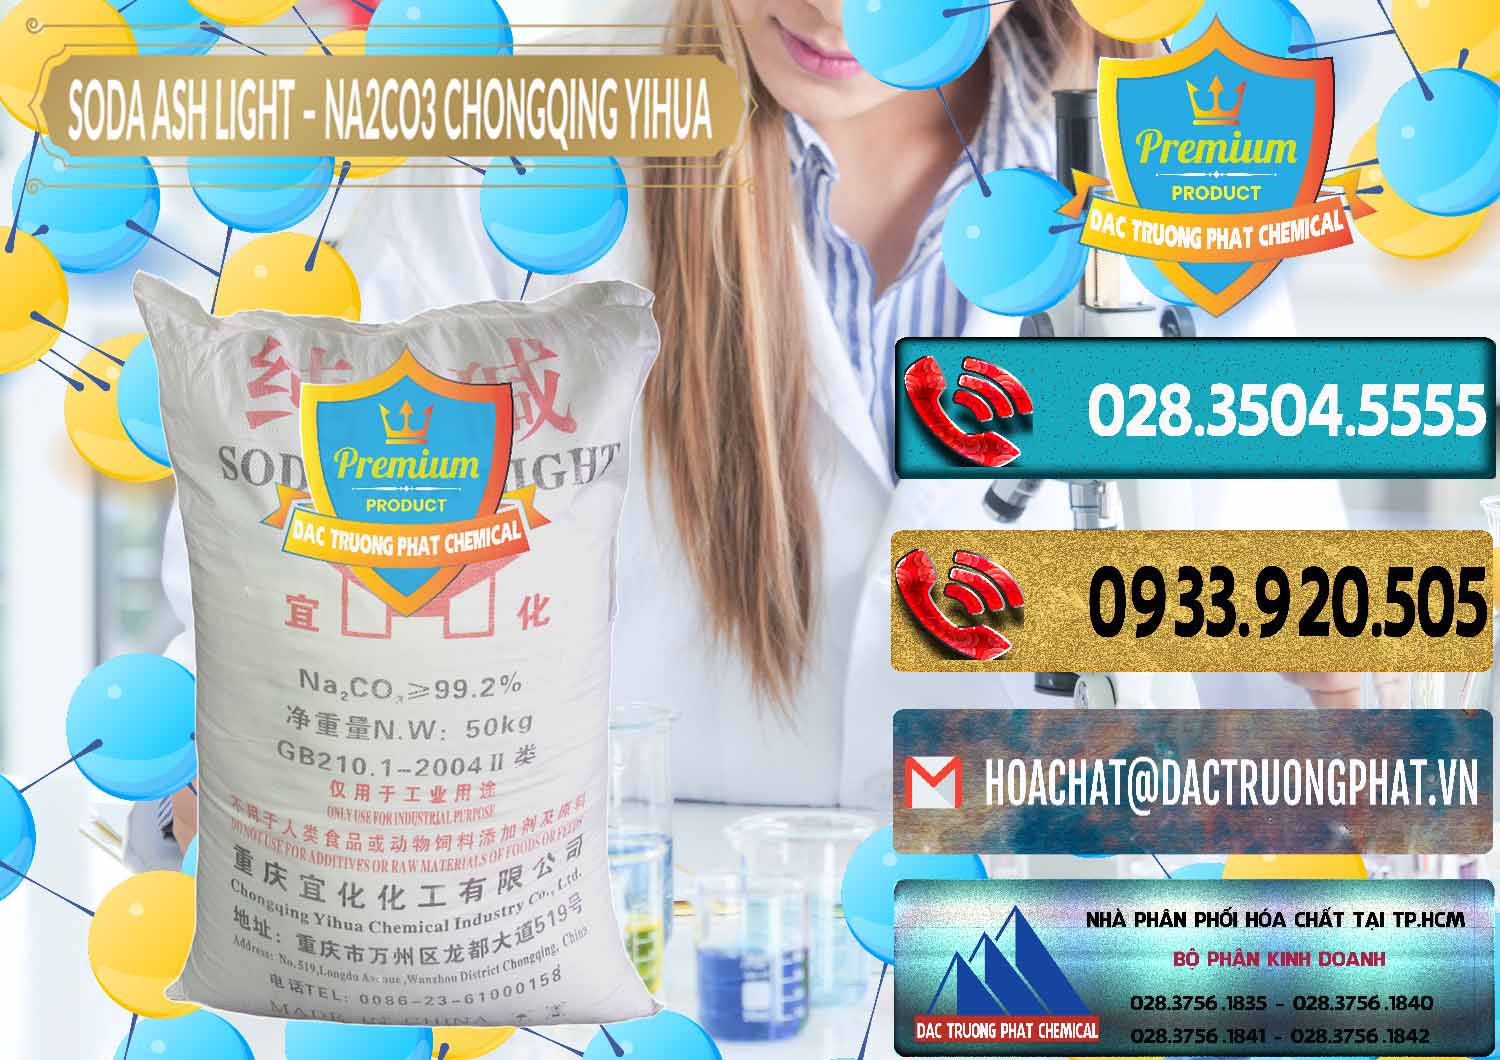 Công ty chuyên bán và cung cấp Soda Ash Light - NA2CO3 Chongqing Yihua Trung Quốc China - 0129 - Nơi bán và phân phối hóa chất tại TP.HCM - hoachatdetnhuom.com